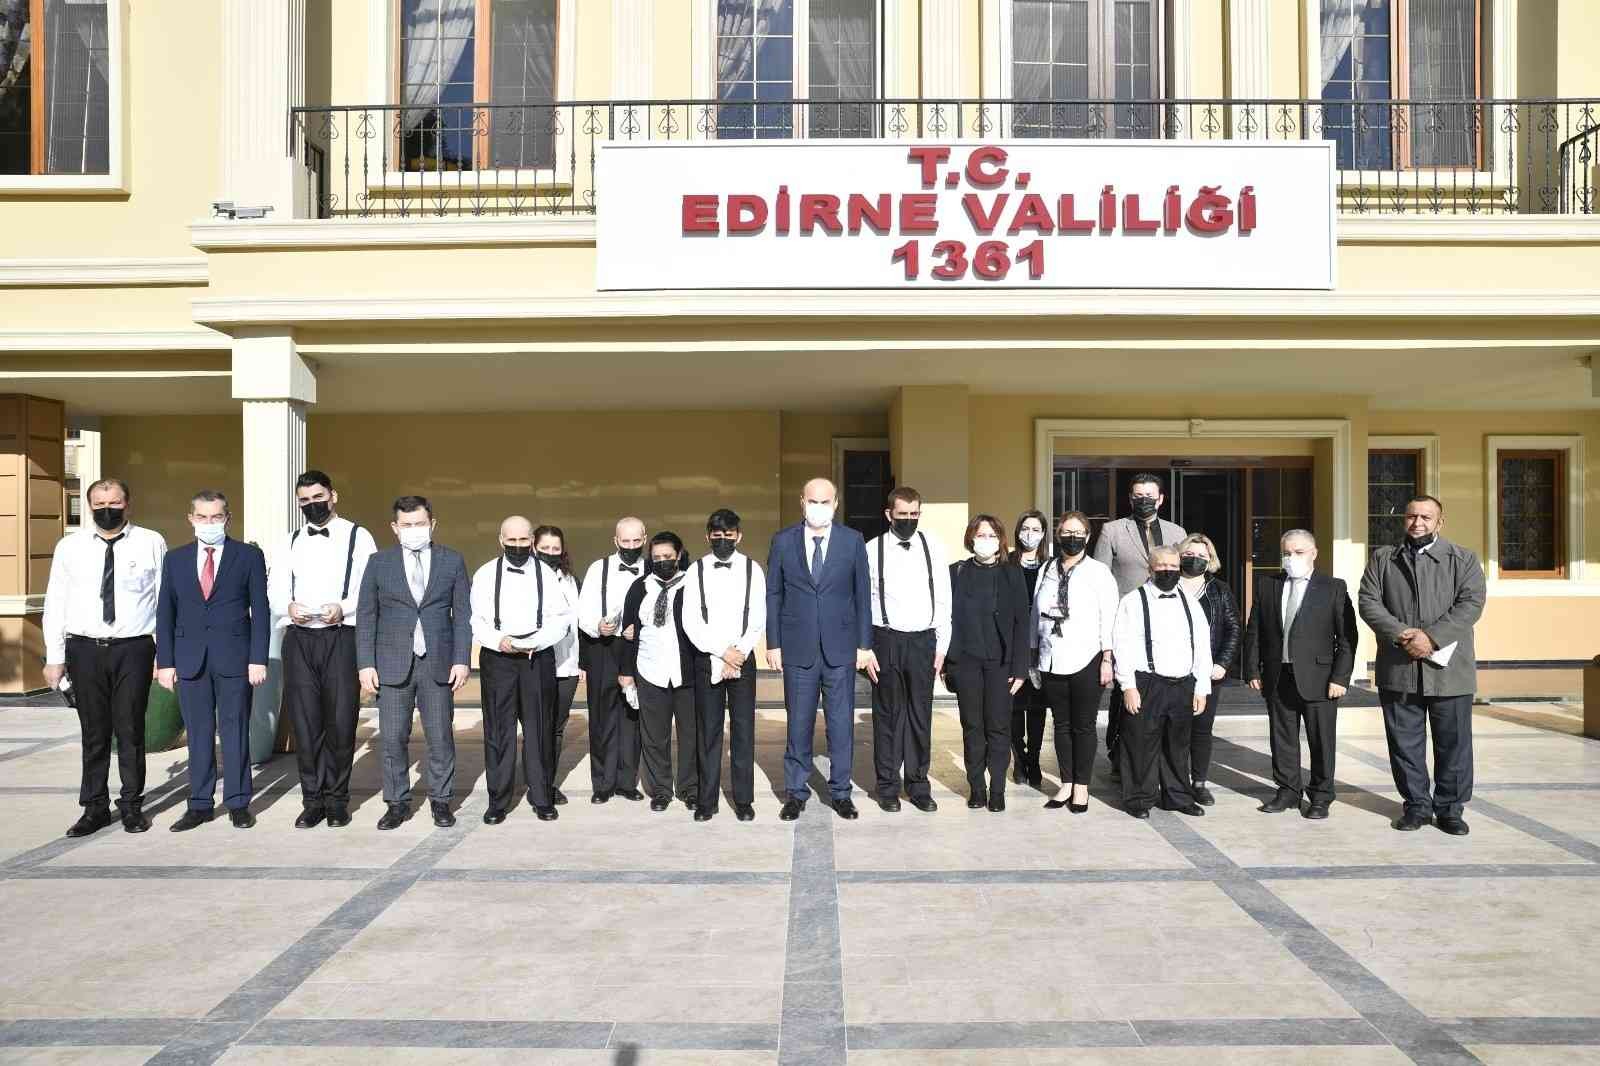 Engelli vatandaşlardan Vali Canalp’a ziyaret #edirne